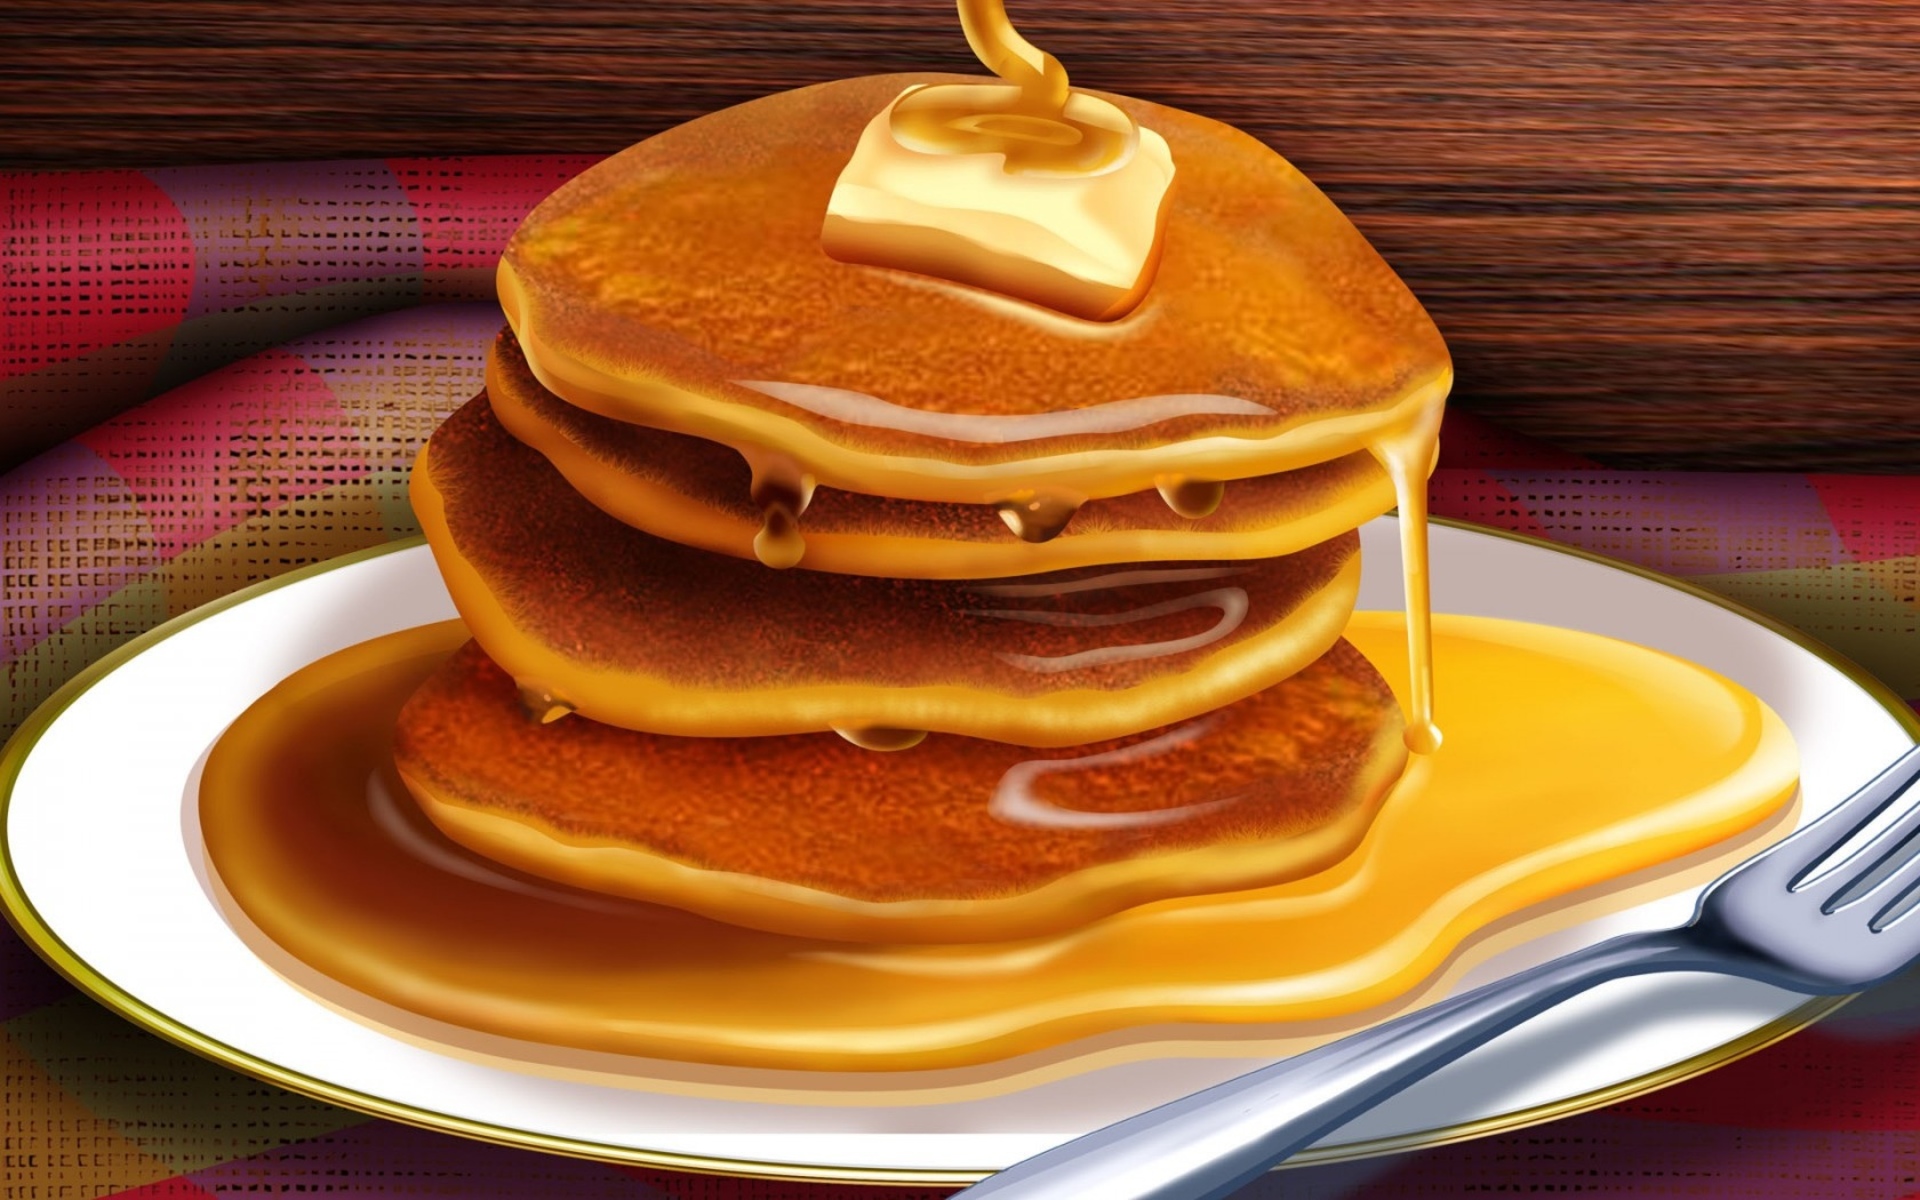 Free download wallpaper Food, Pancake on your PC desktop